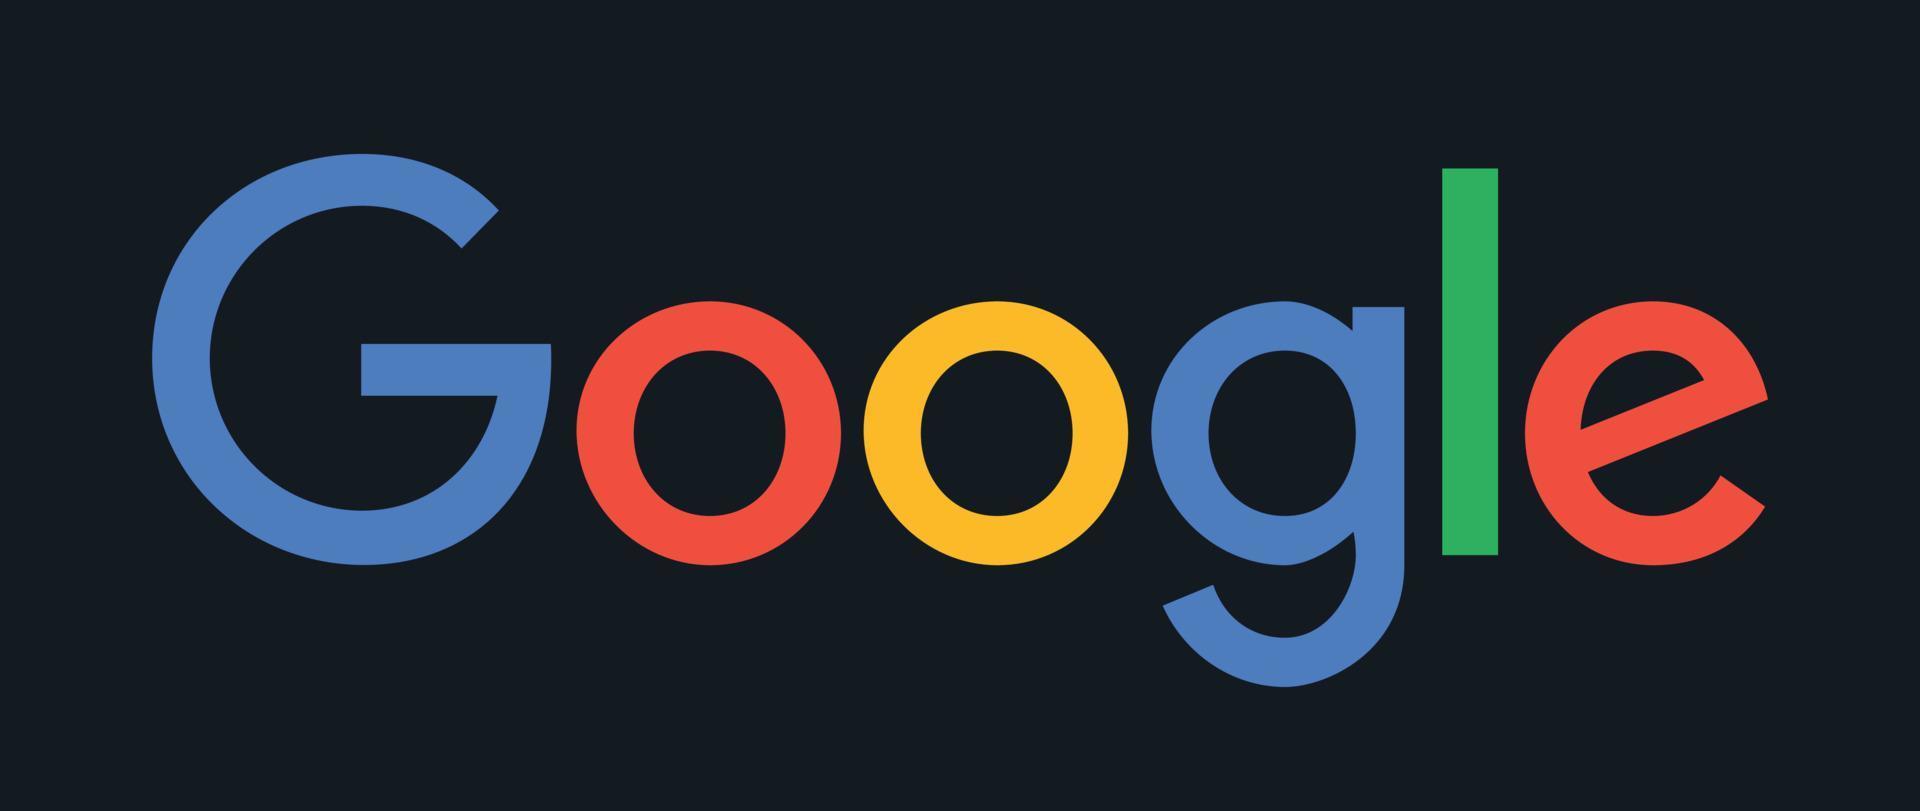 colorido logo de texto de google sobre fondo oscuro vector